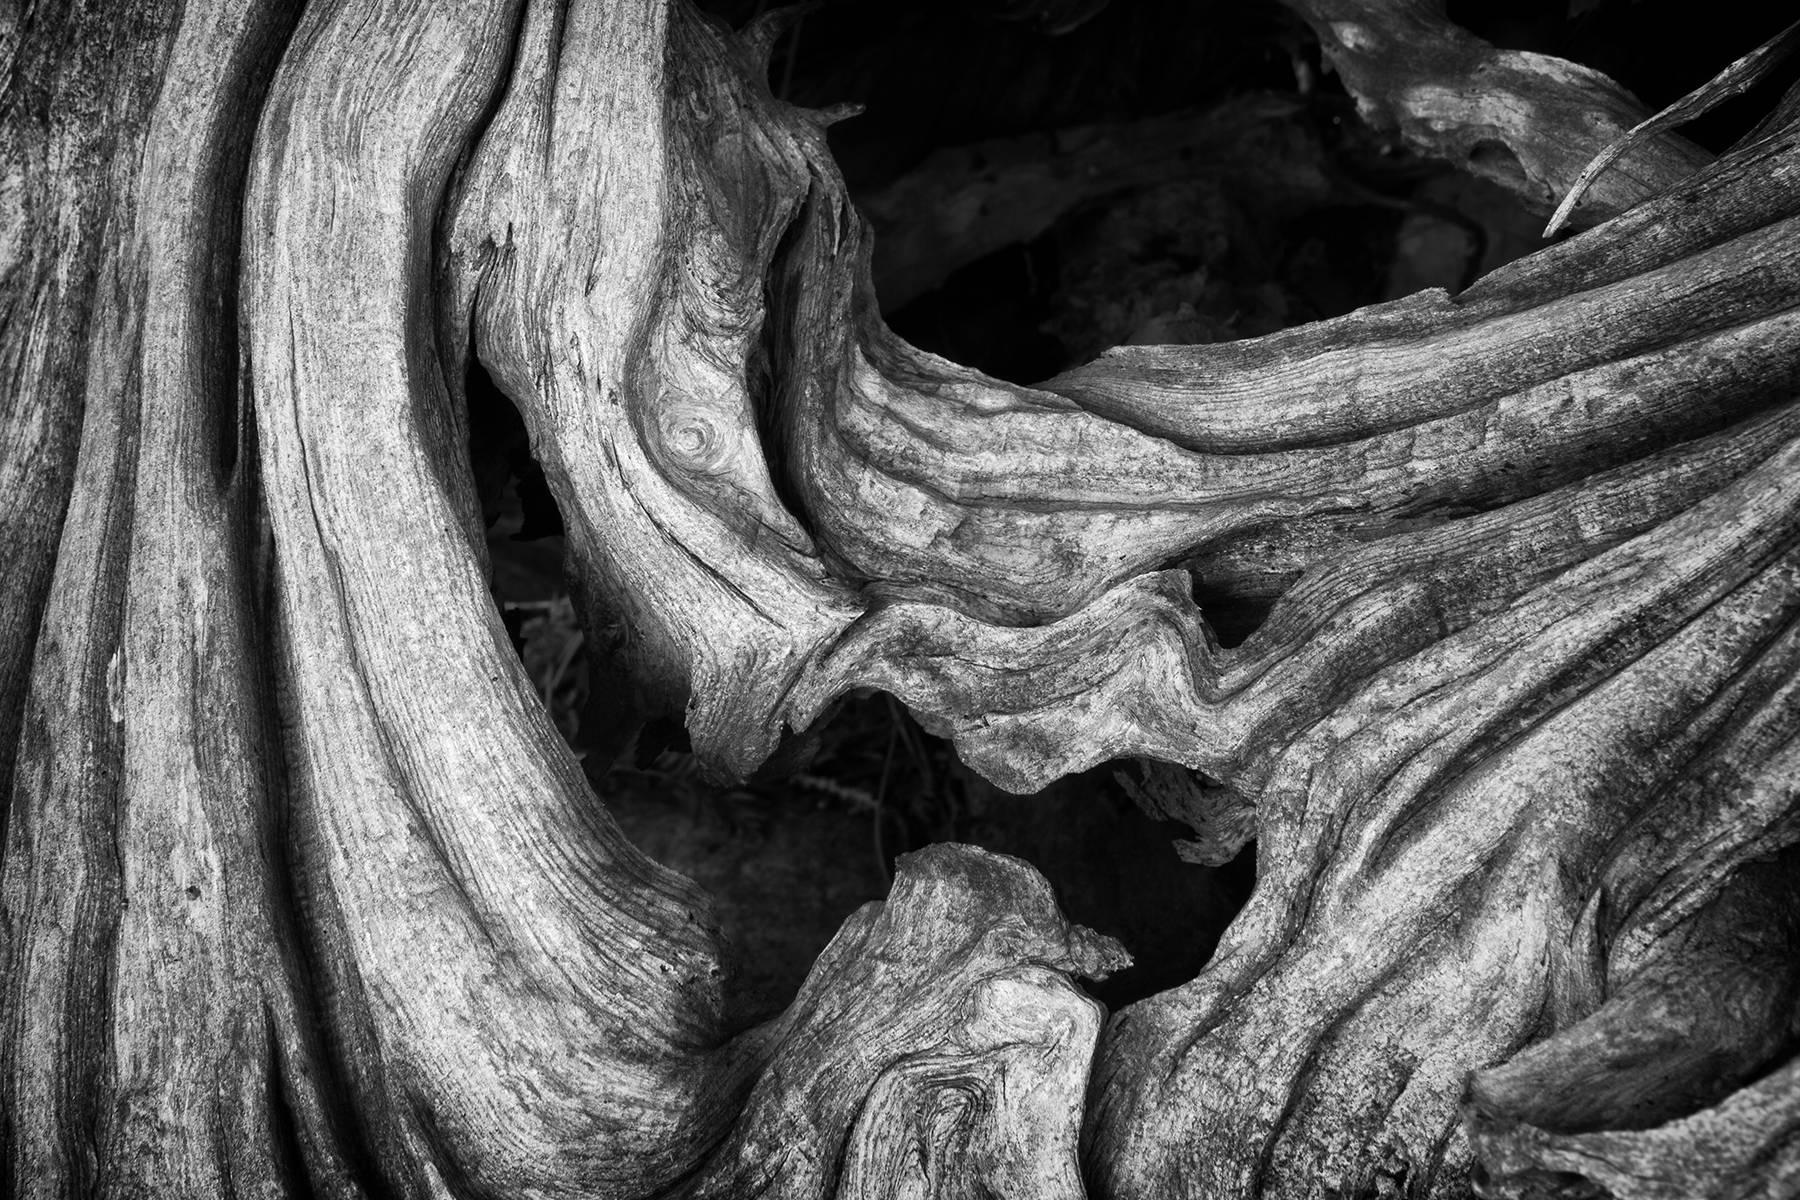 "Erosion #4", Landschaft, Baum, Roots, schwarz, weiß, Metalldruck, Fotografie